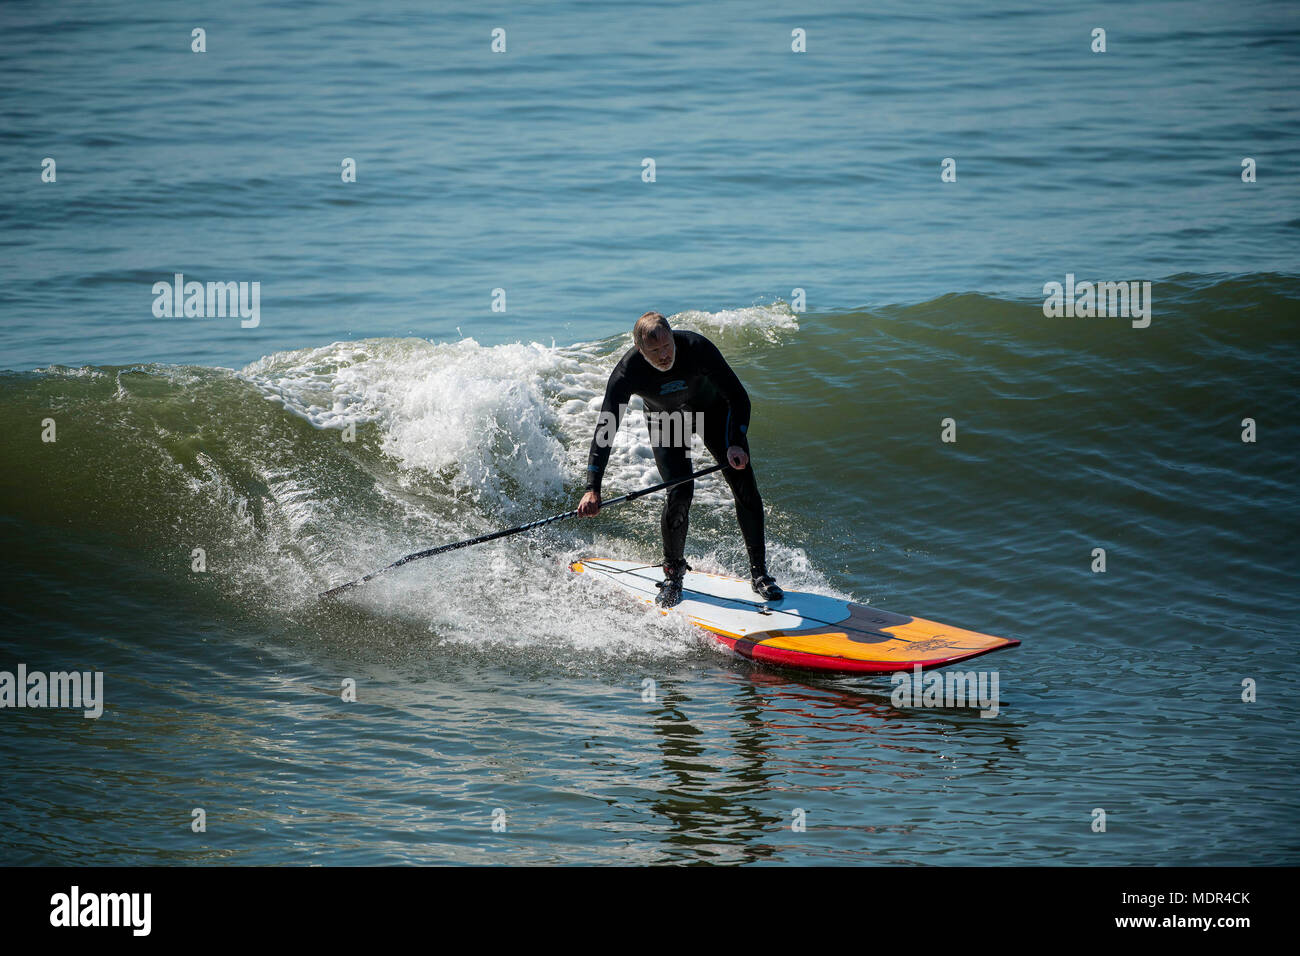 19.04.18. Météo de Bournemouth. Une pagaie boarder surfe sur une vague à côté de la jetée de Bournemouth car les températures montent sur la côte sud du Royaume-Uni. Banque D'Images